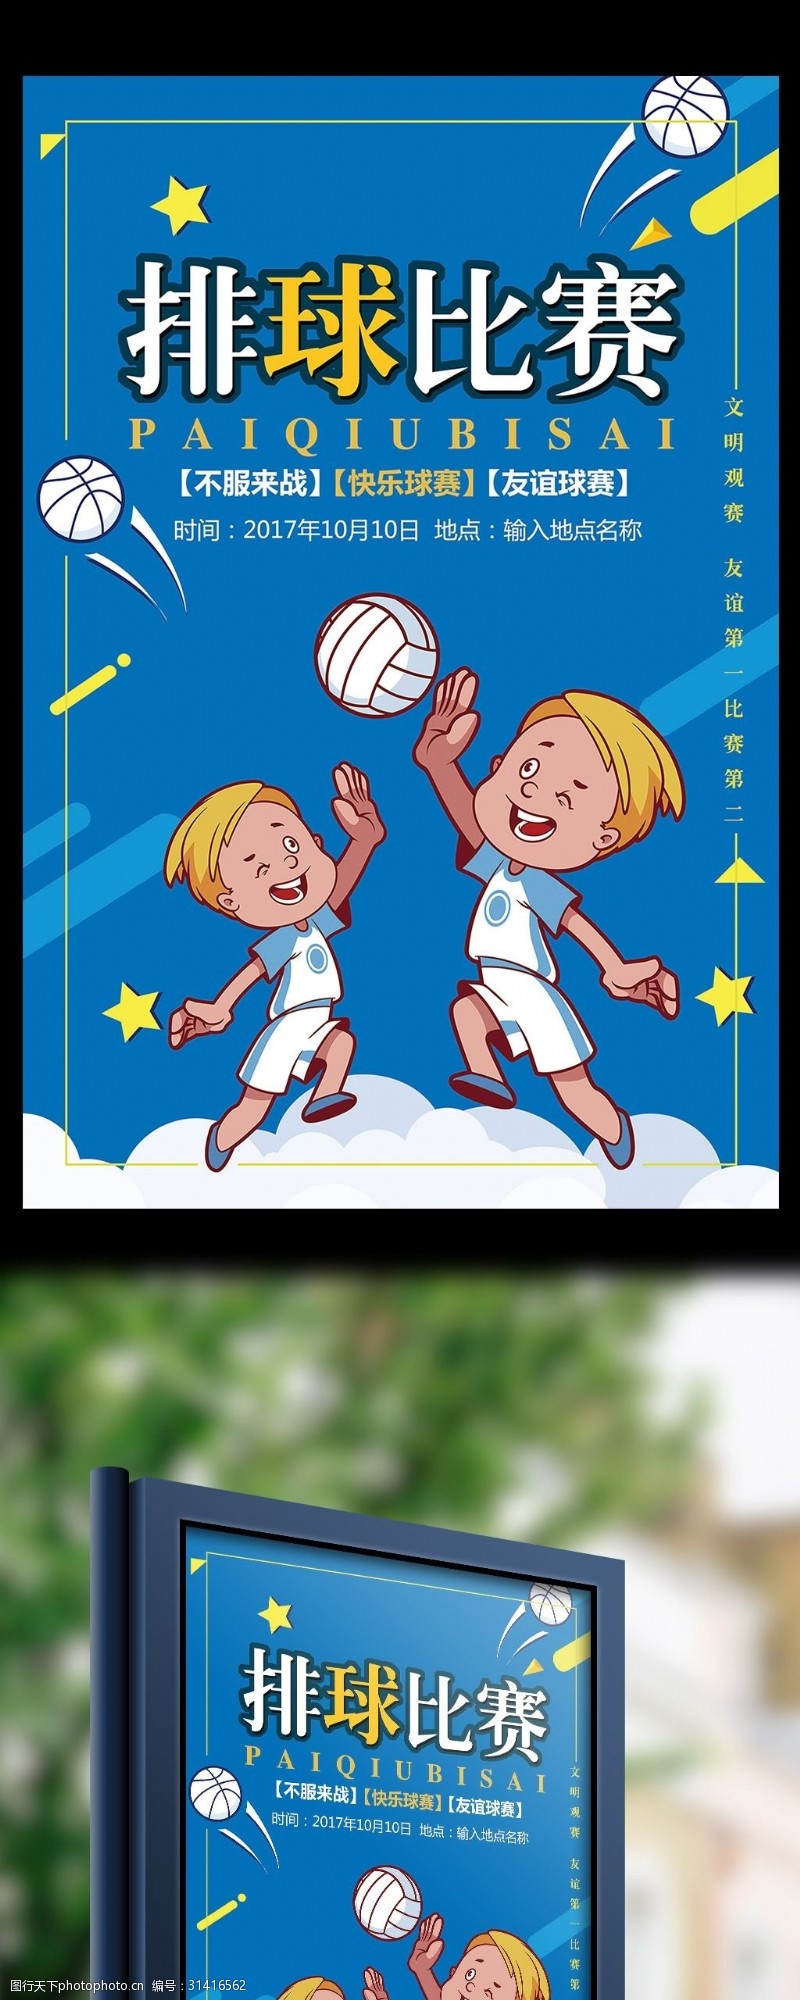 蓝色卡通简约体育运动排球争霸赛海报模板